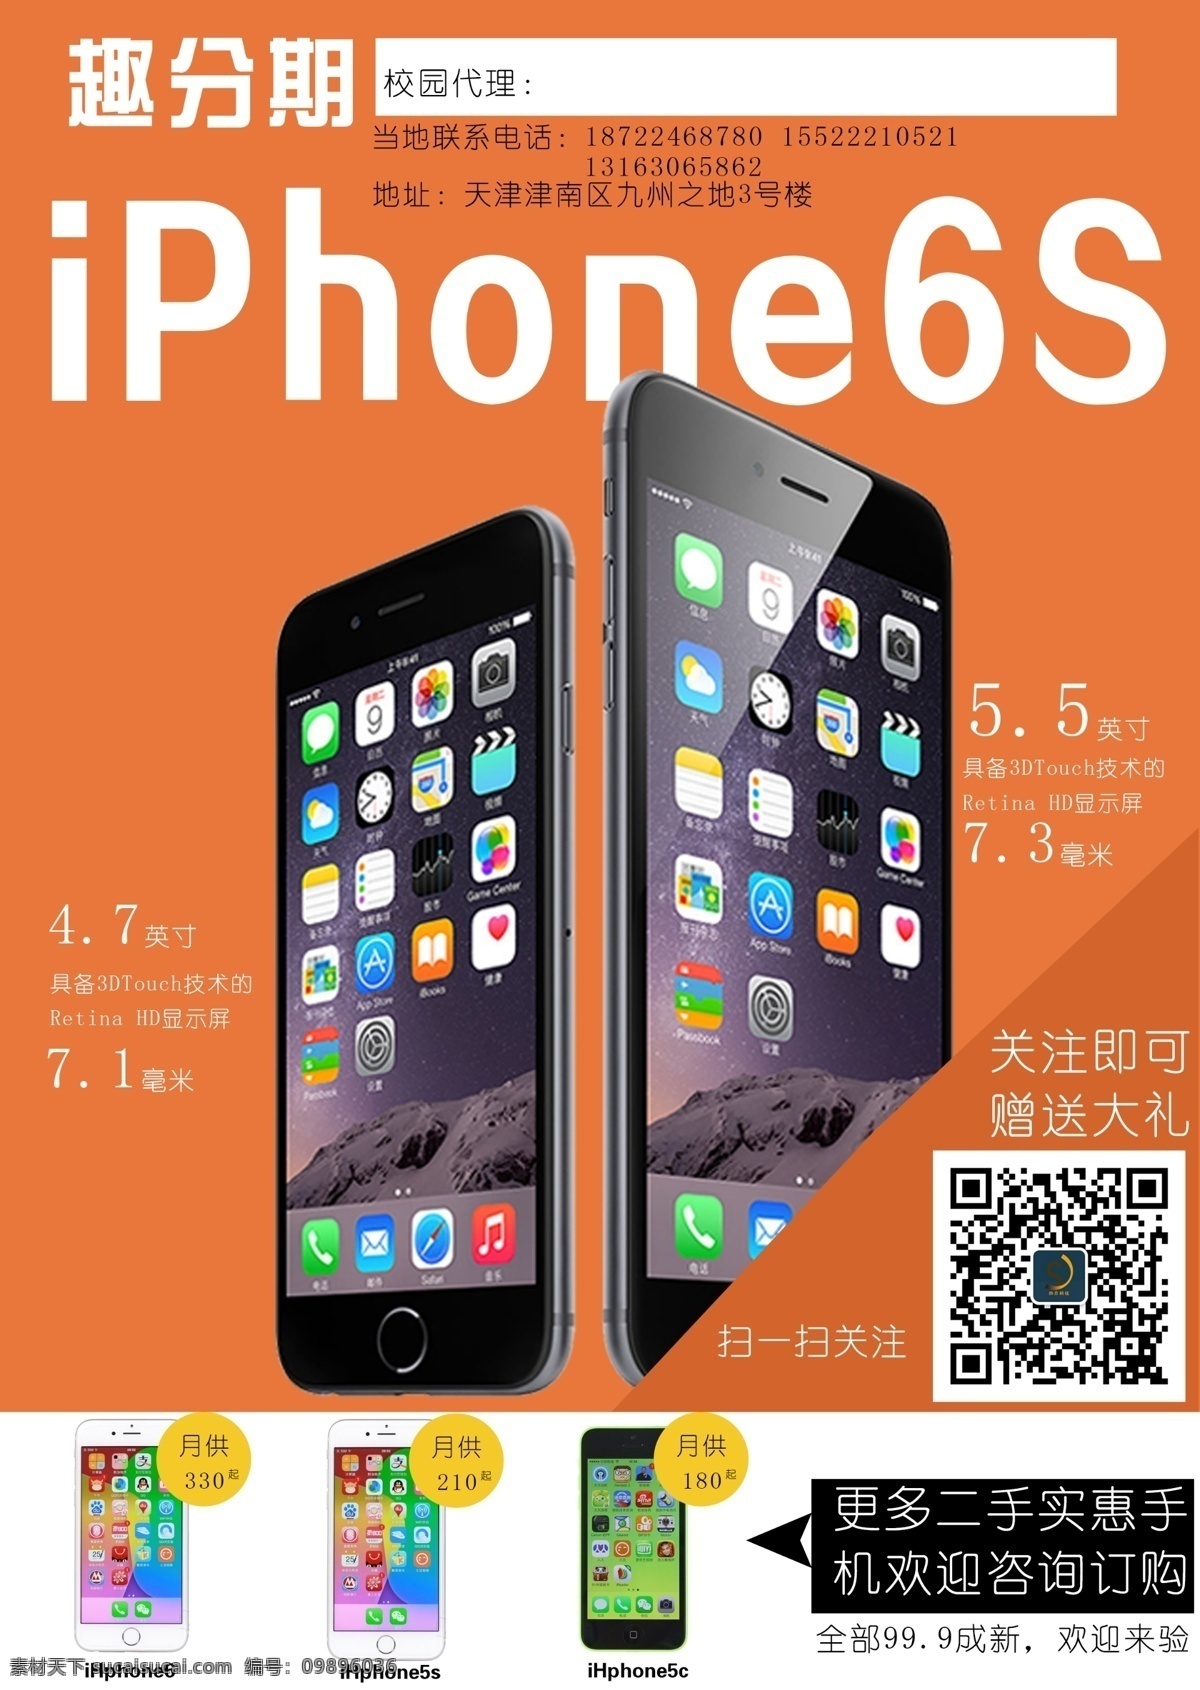 趣 分期 苹果 手机 6s 海报 图 趣分期 ihpone6s 橙色